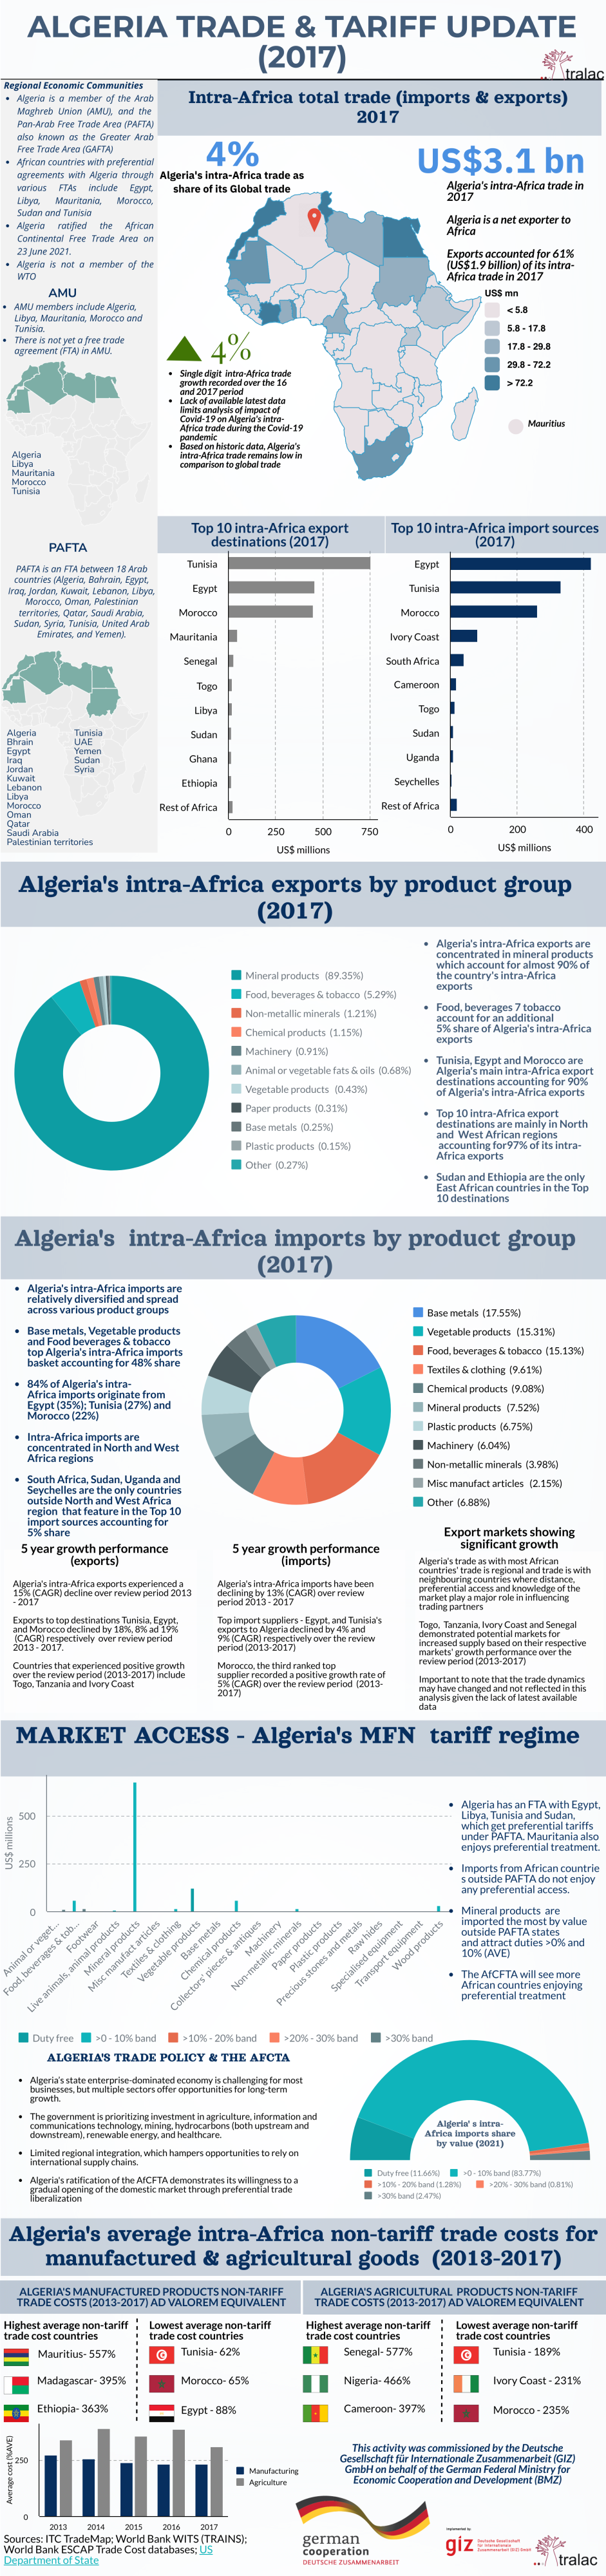 Algeria trade and tariff update 2017